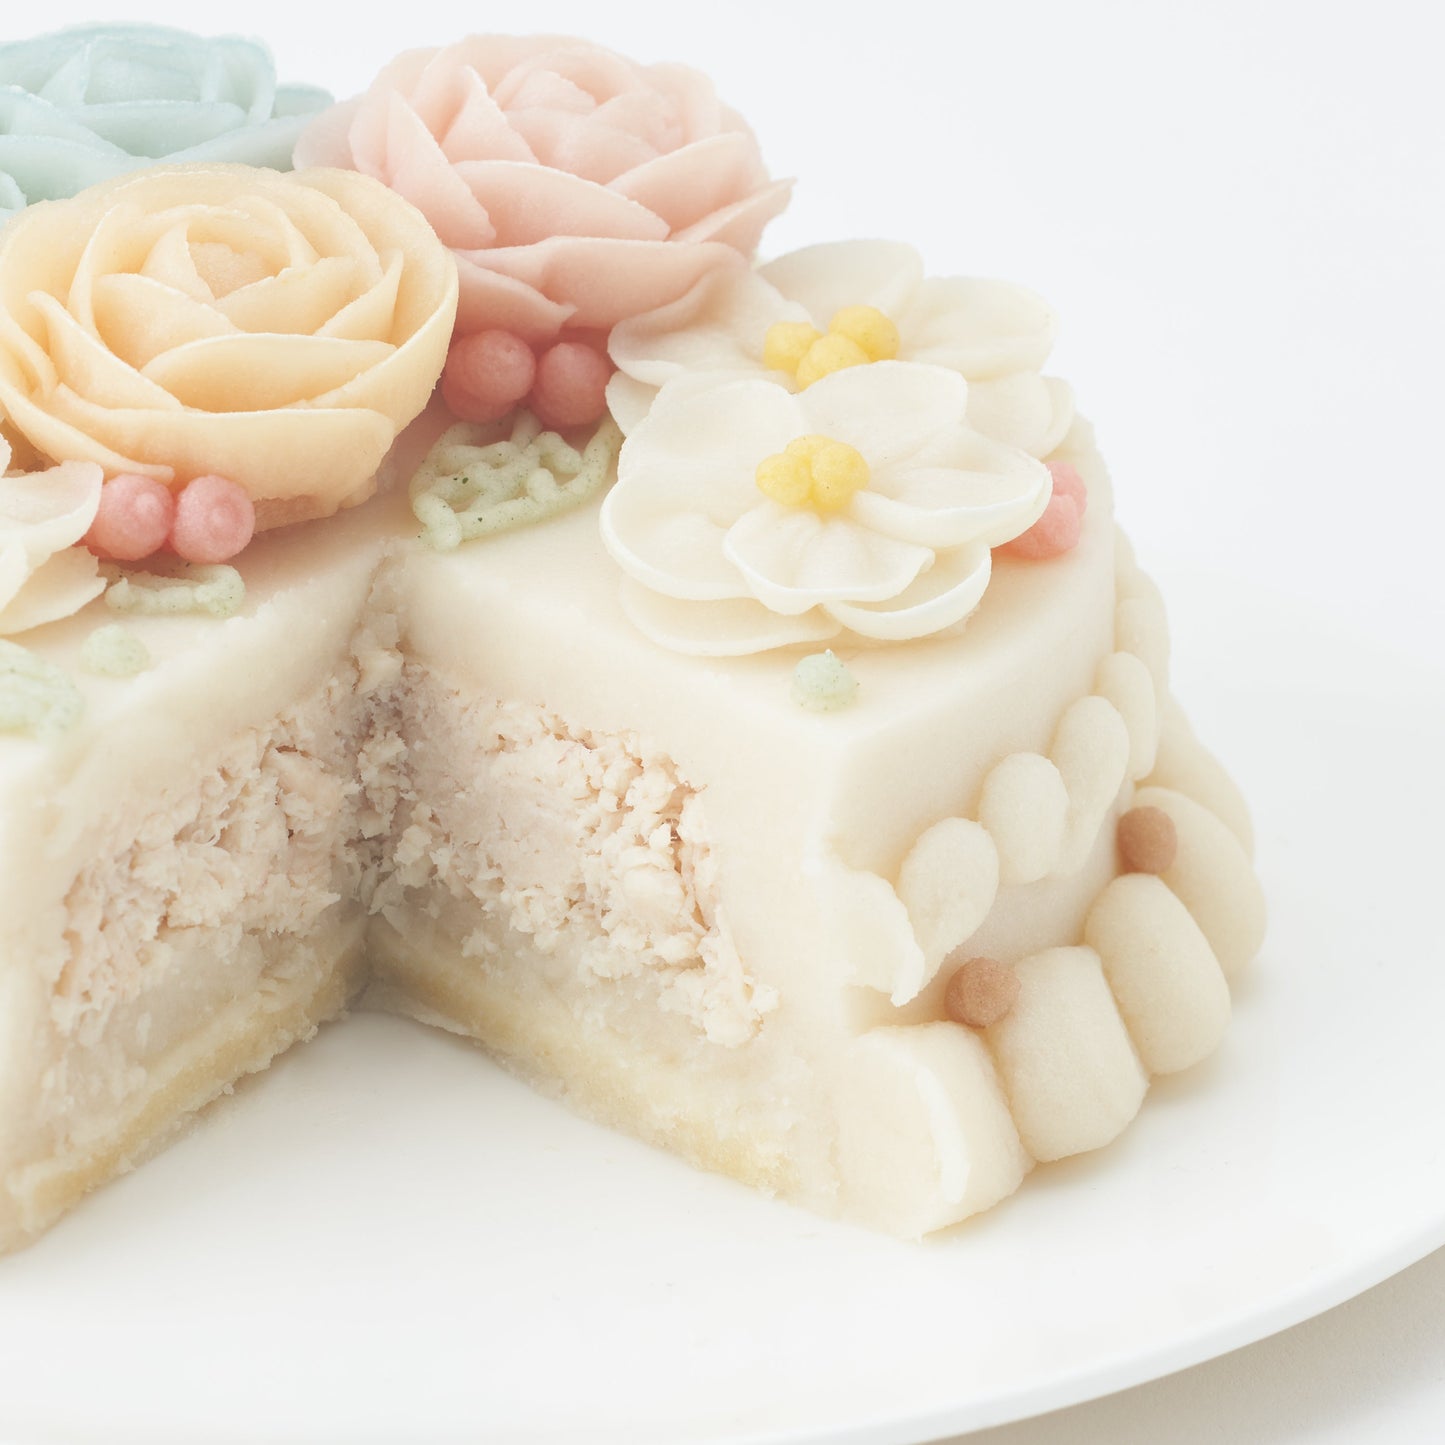 【送料無料】愛犬用 誕生日ケーキ フラワーセットD